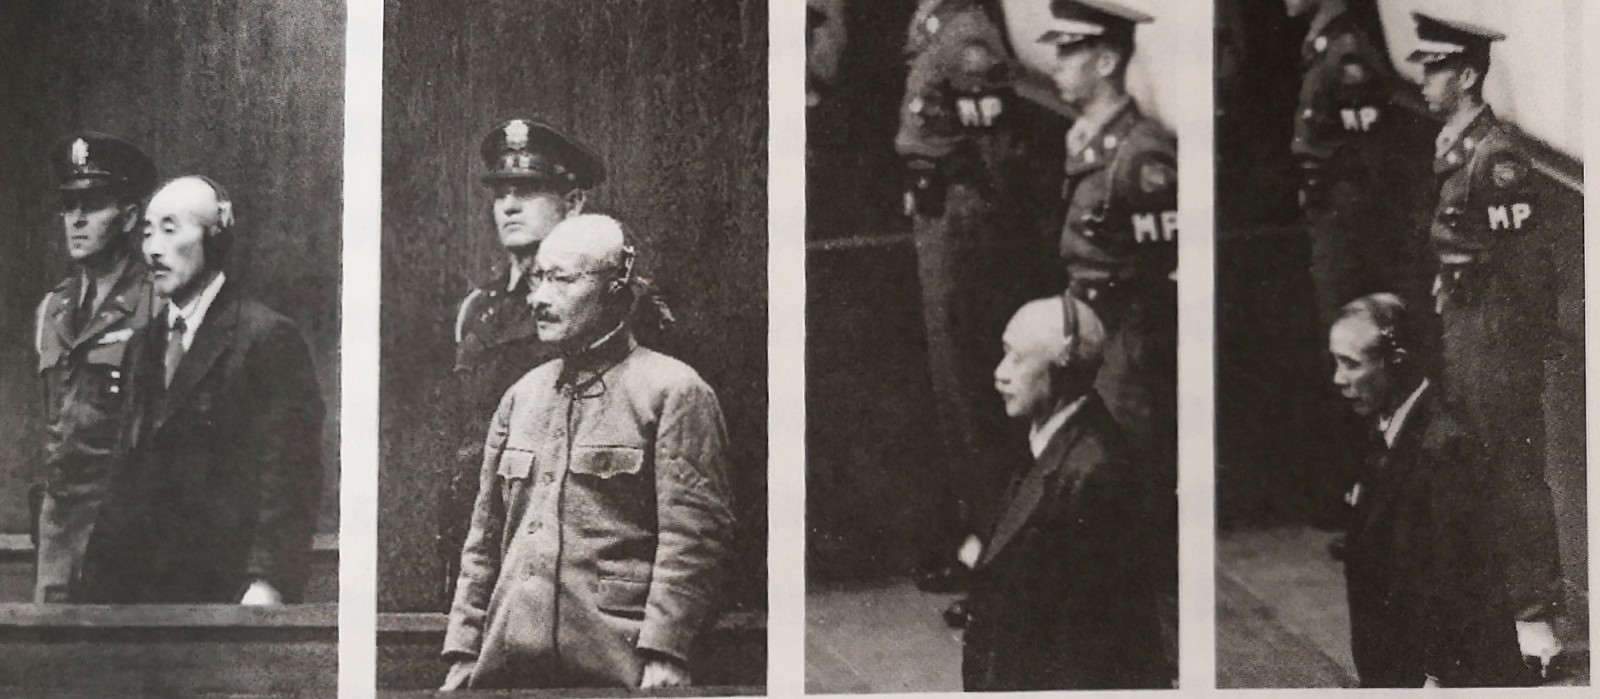 图28 被判处绞刑的四位日本战犯。从左至右依次为板垣征四郎、东条英机、土肥原贤二、广田弘毅.jpg